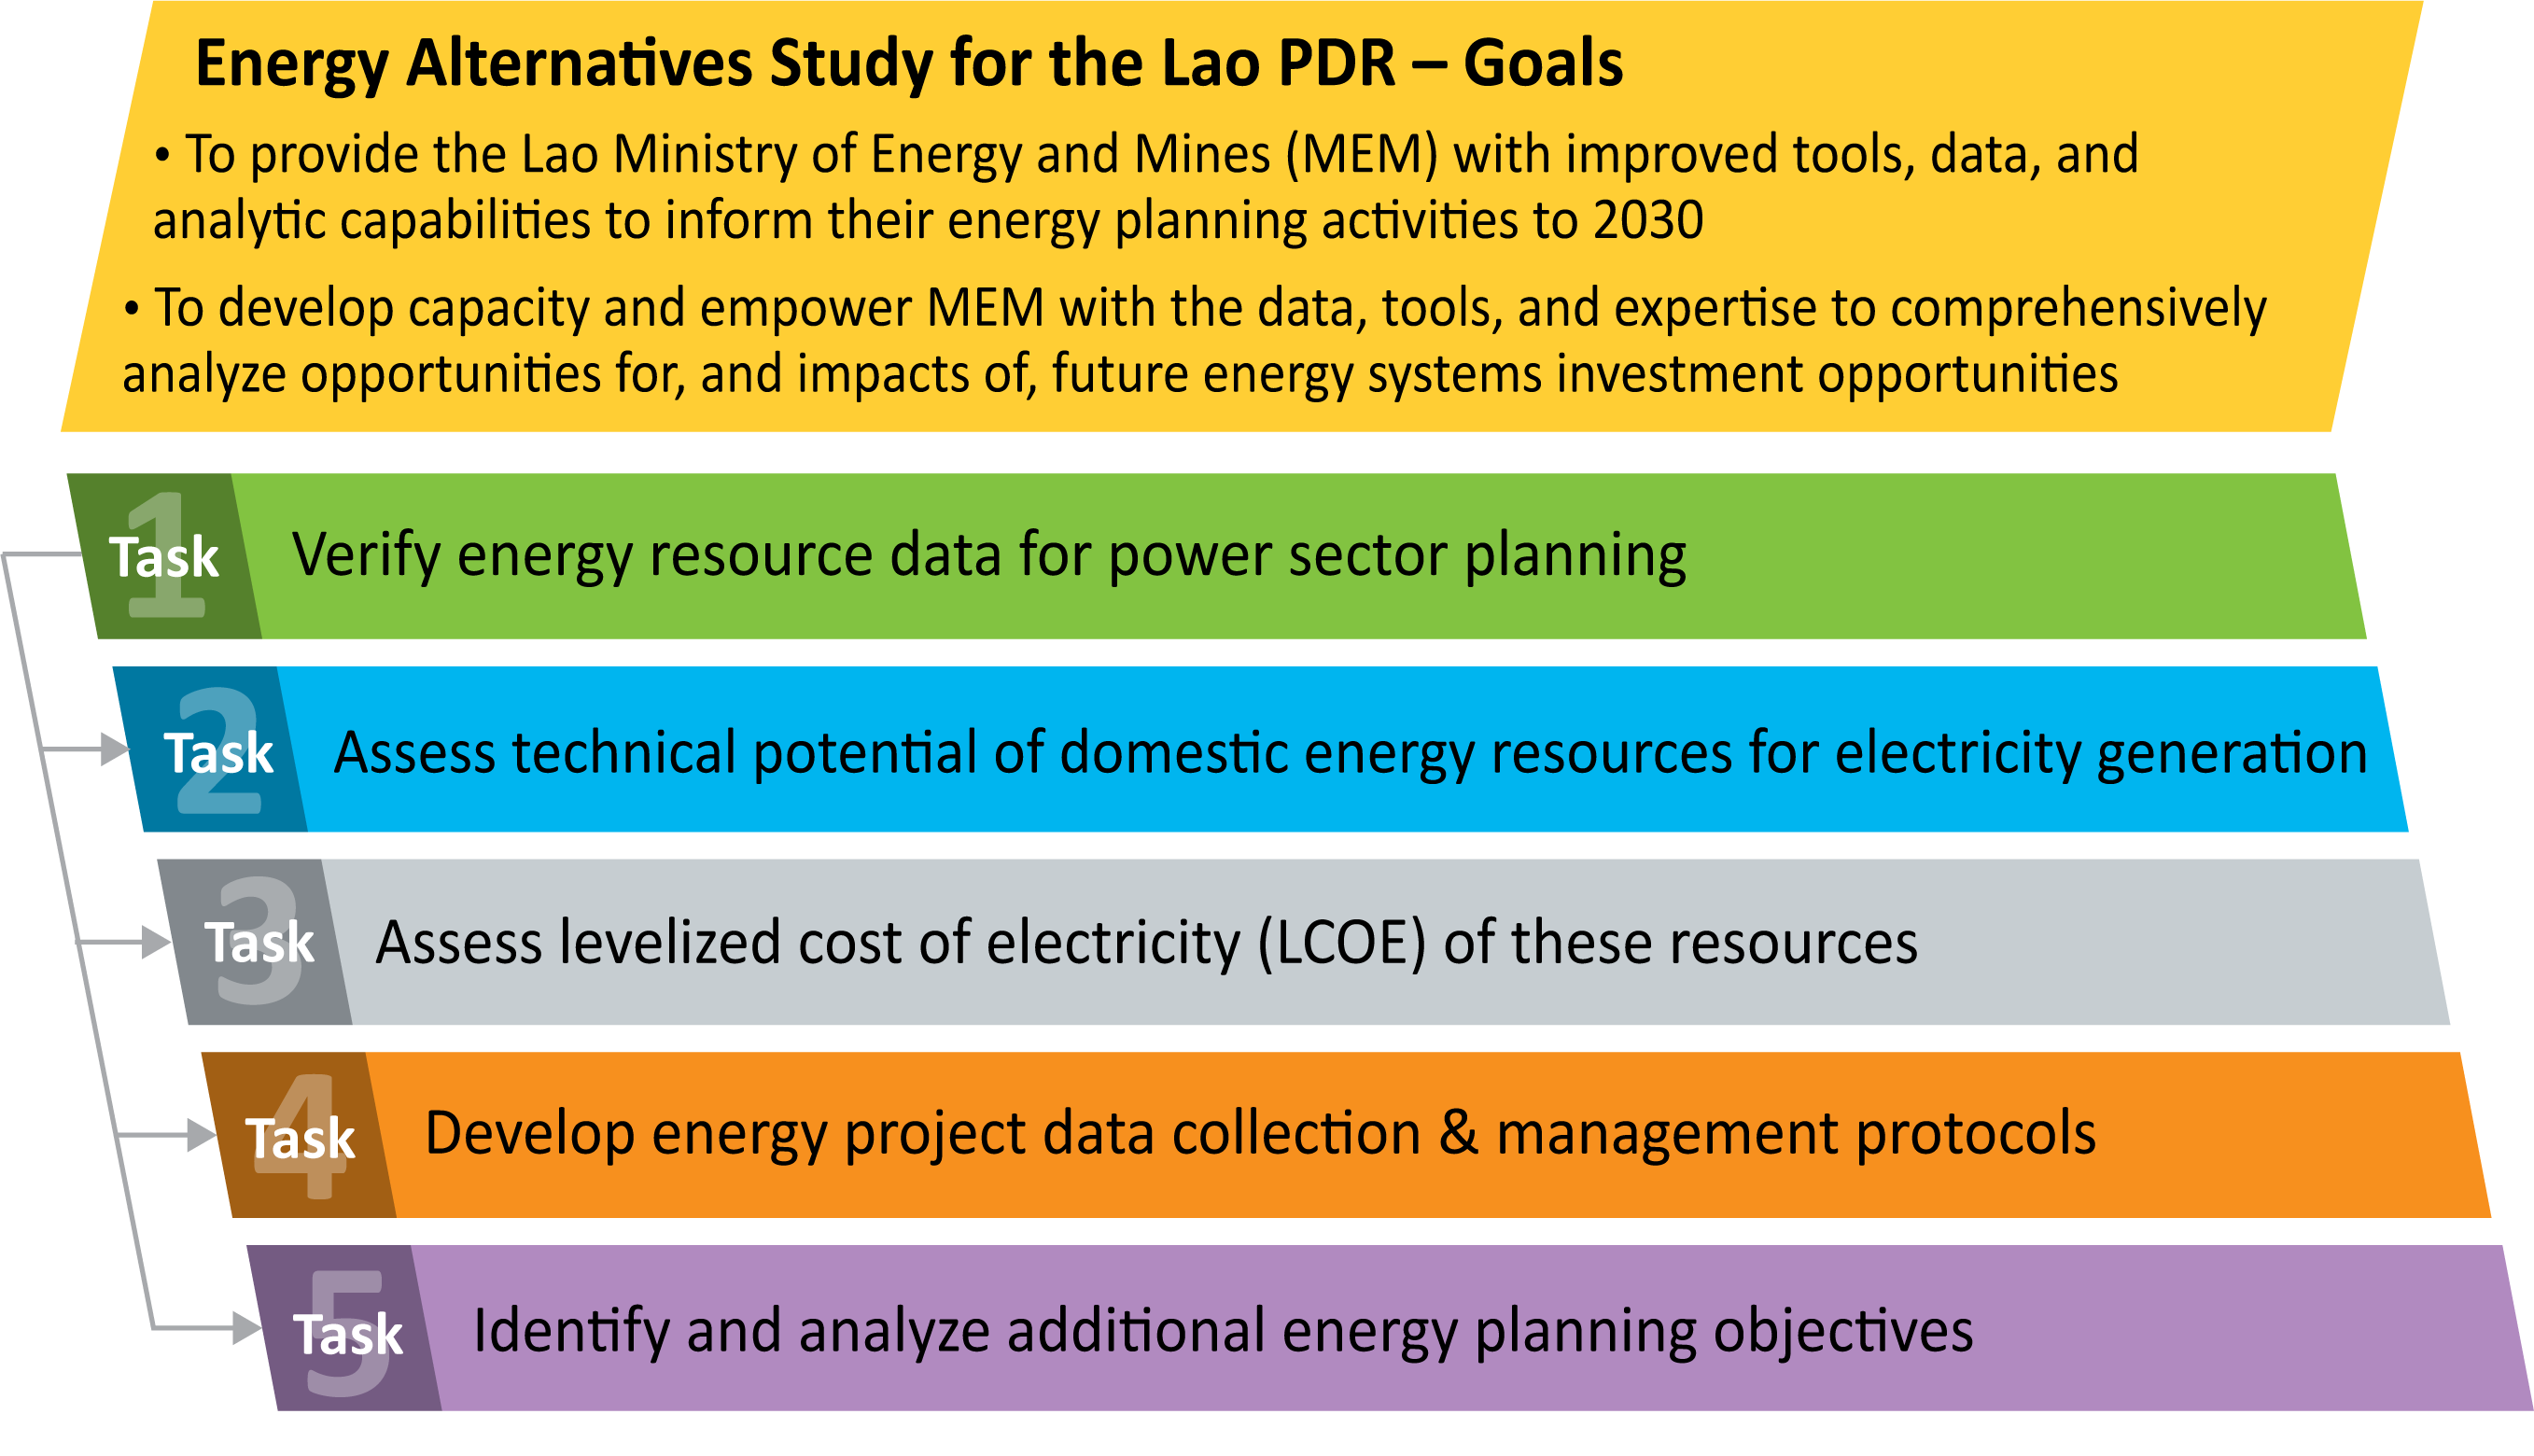 Lao PDR Energy Alternatives Study Goals